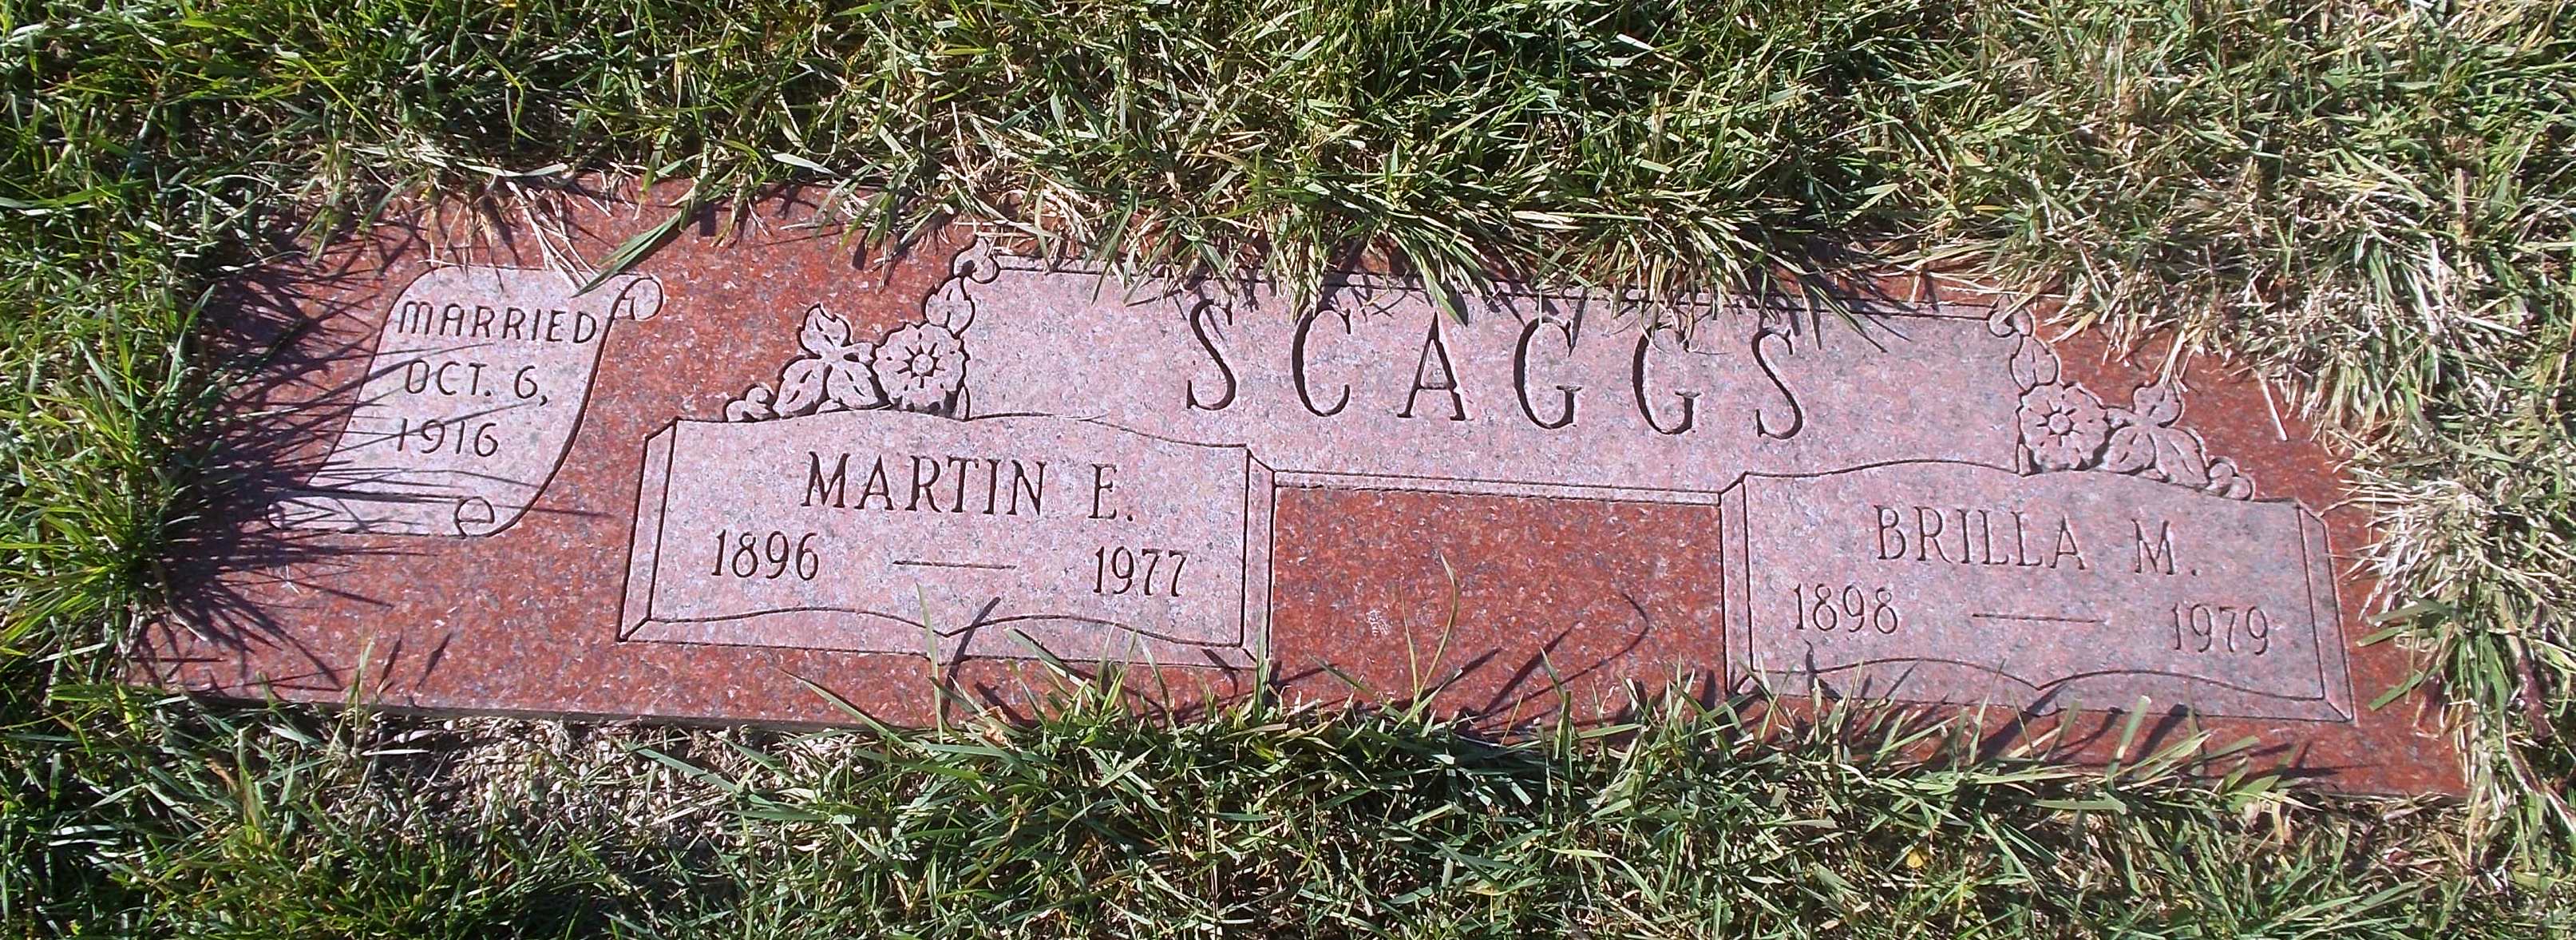 Martin E Scaggs